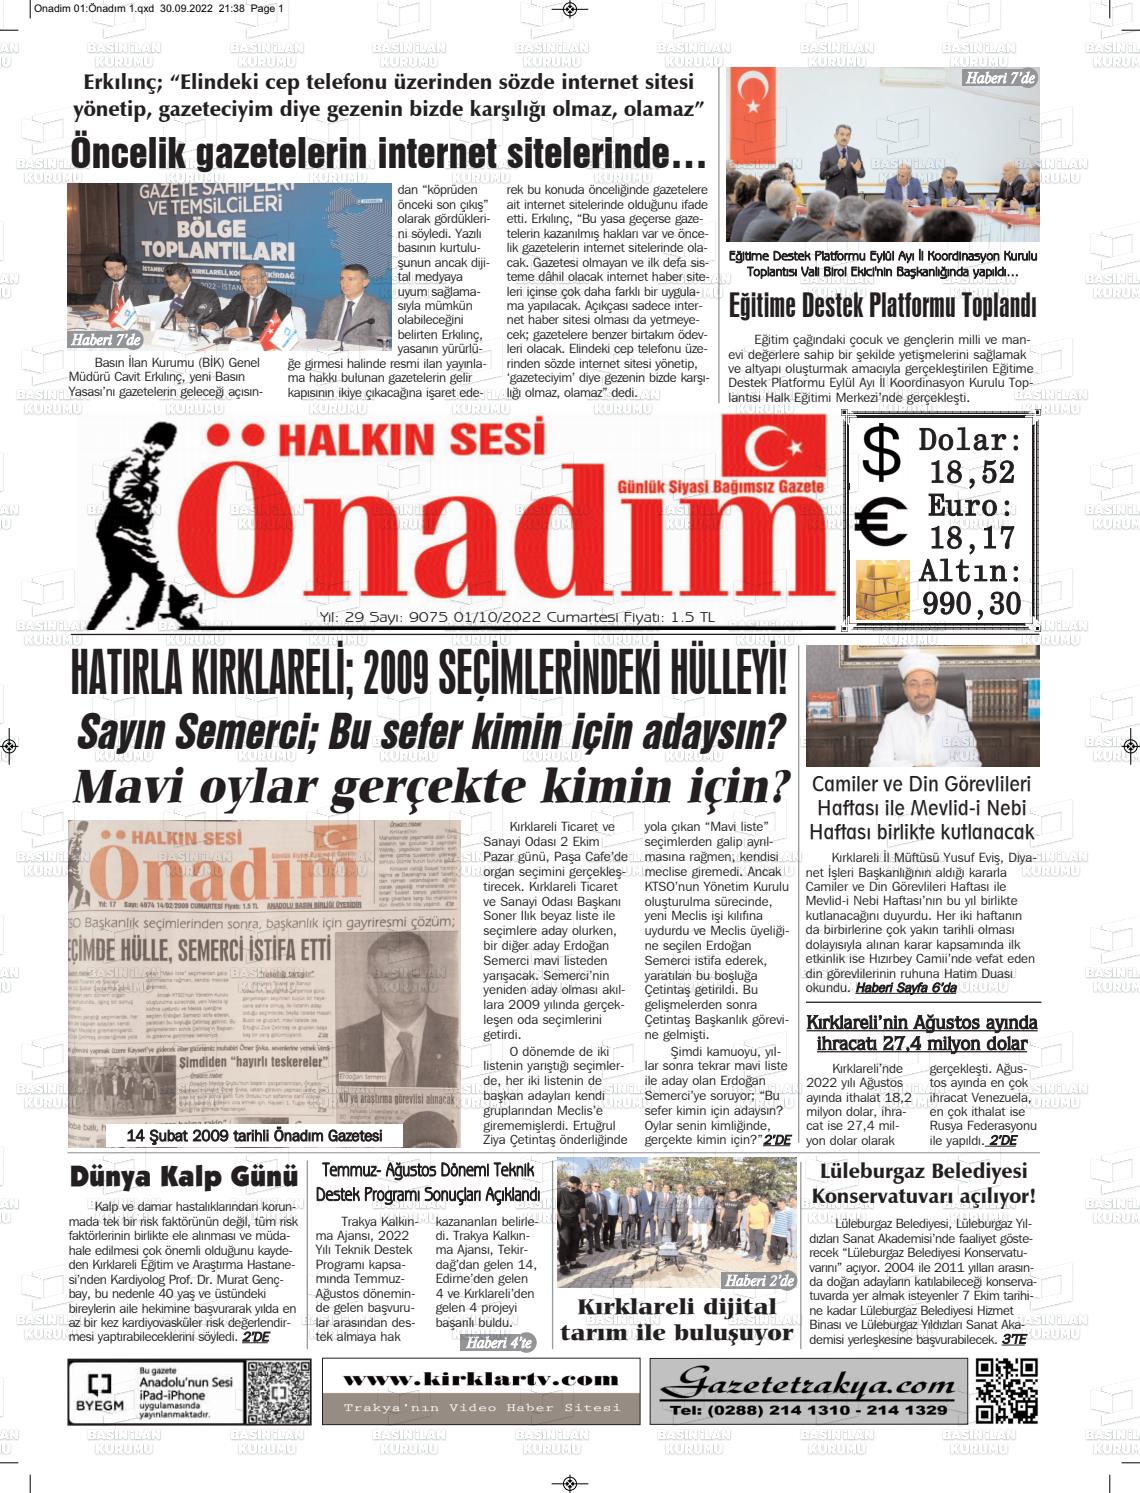 01 Ekim 2022 Halkın Sesi Önadım Gazete Manşeti